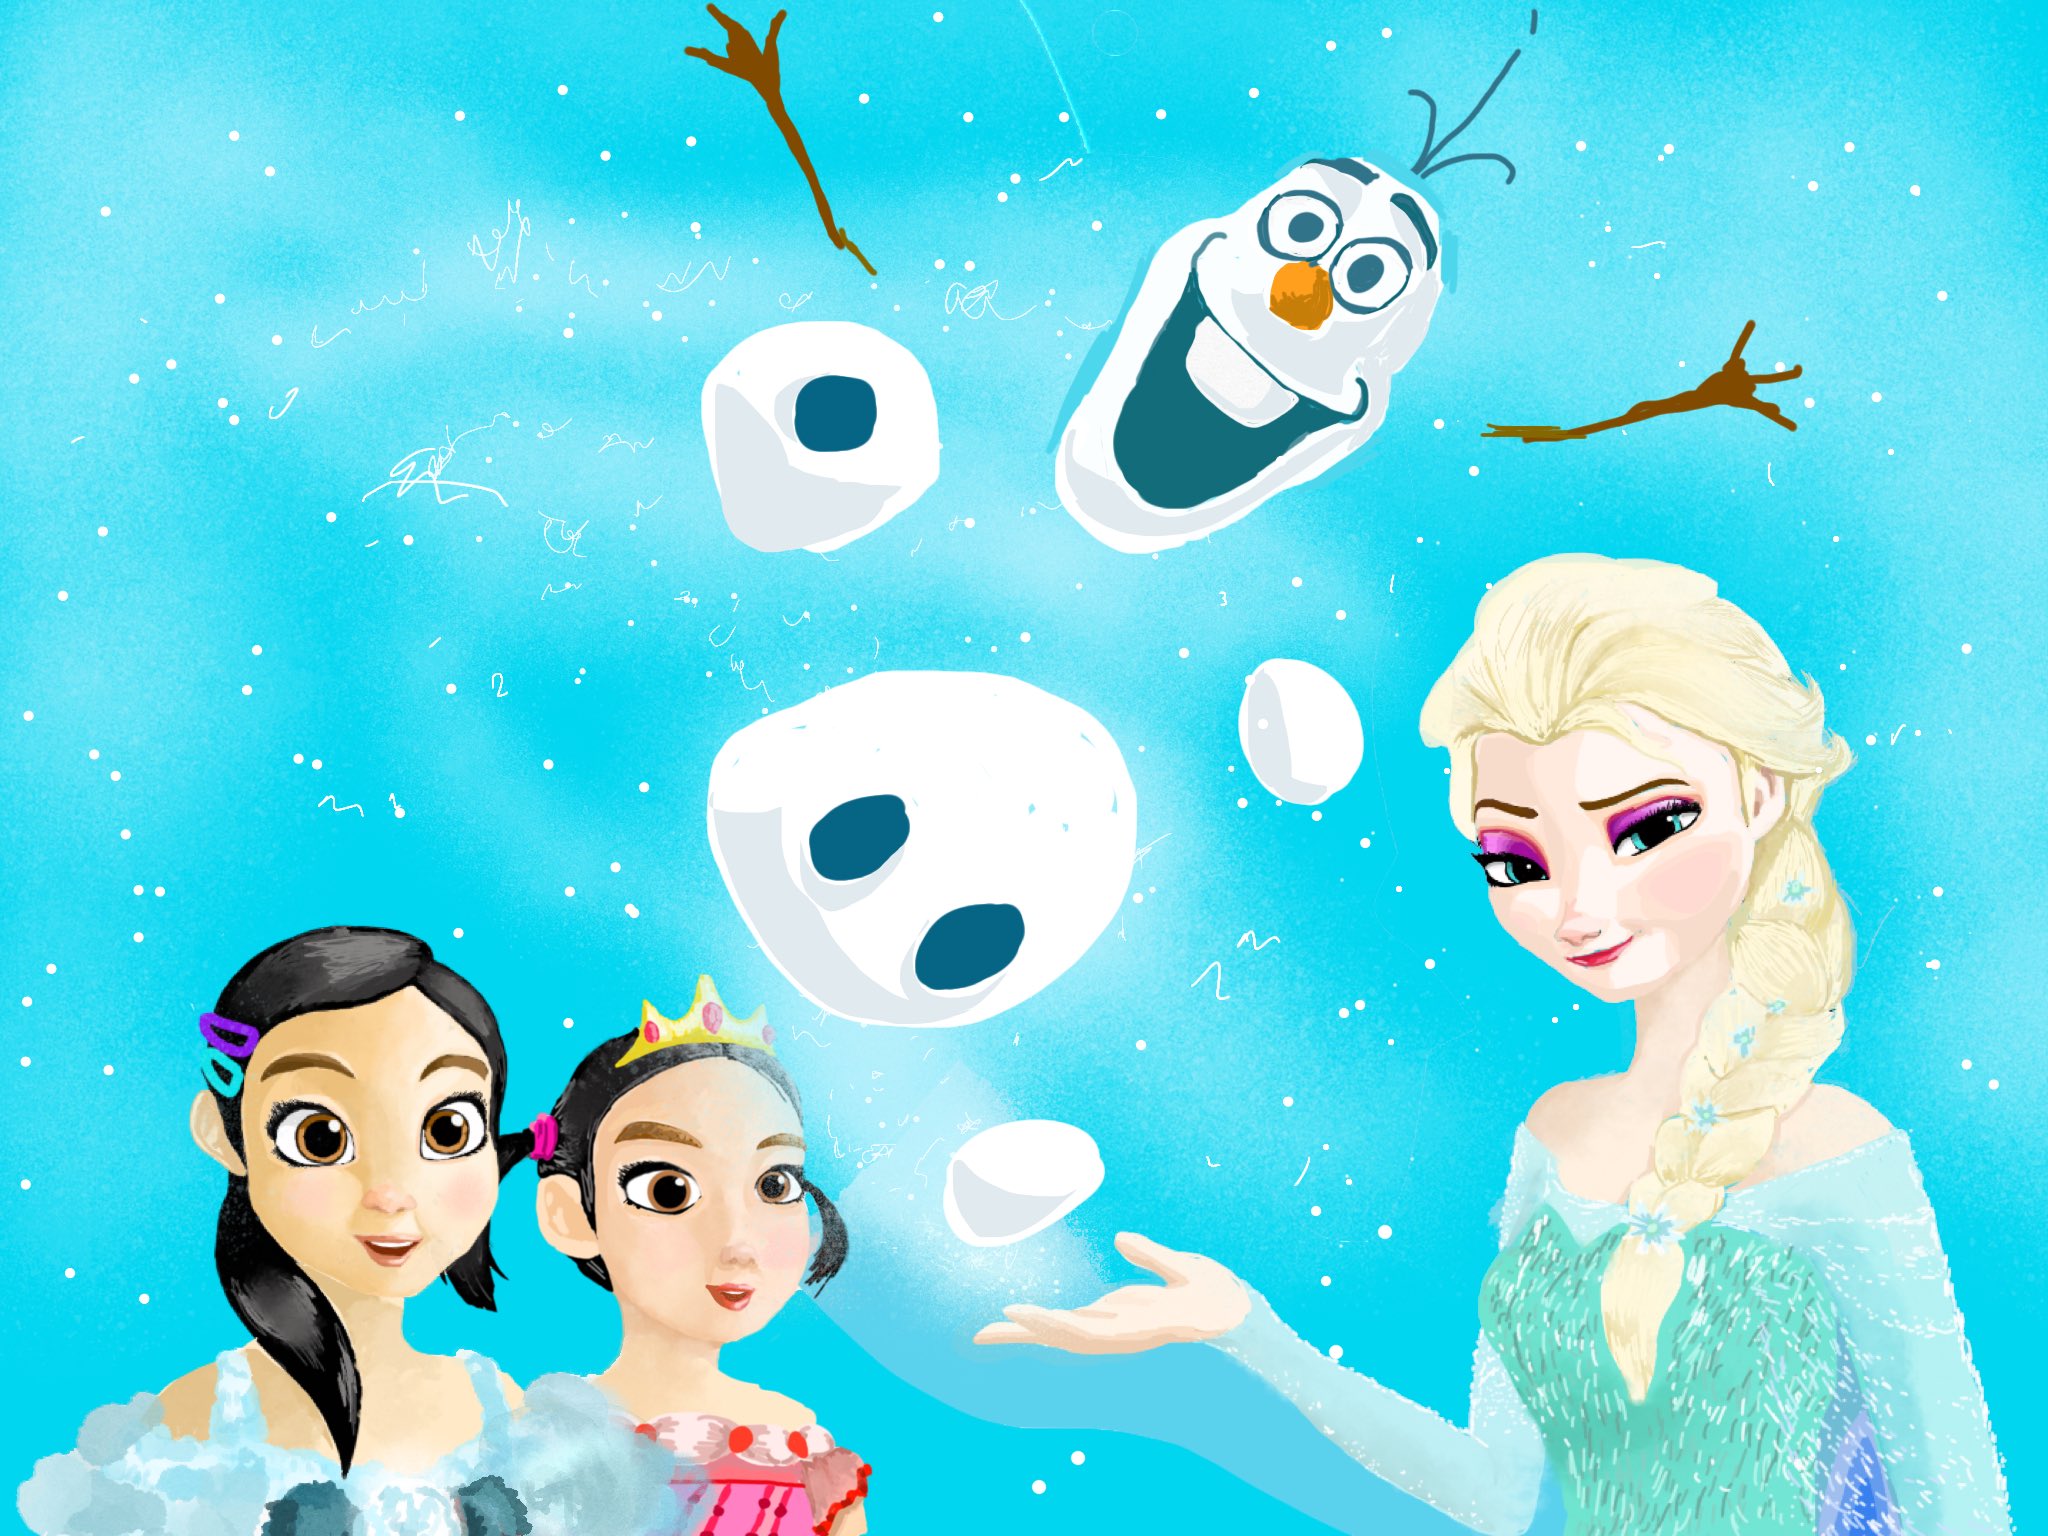 23 インスタで依頼いただき描かせていただきました ディズニー Disney Frozen アナ雪 オラフ かわいい 雪 描いてみた Drawing Japan フォロー 映画 子供 イラスト 絵描きさんと繋がりたい アナ雪2 Cute Movie Illustrate かっこいい